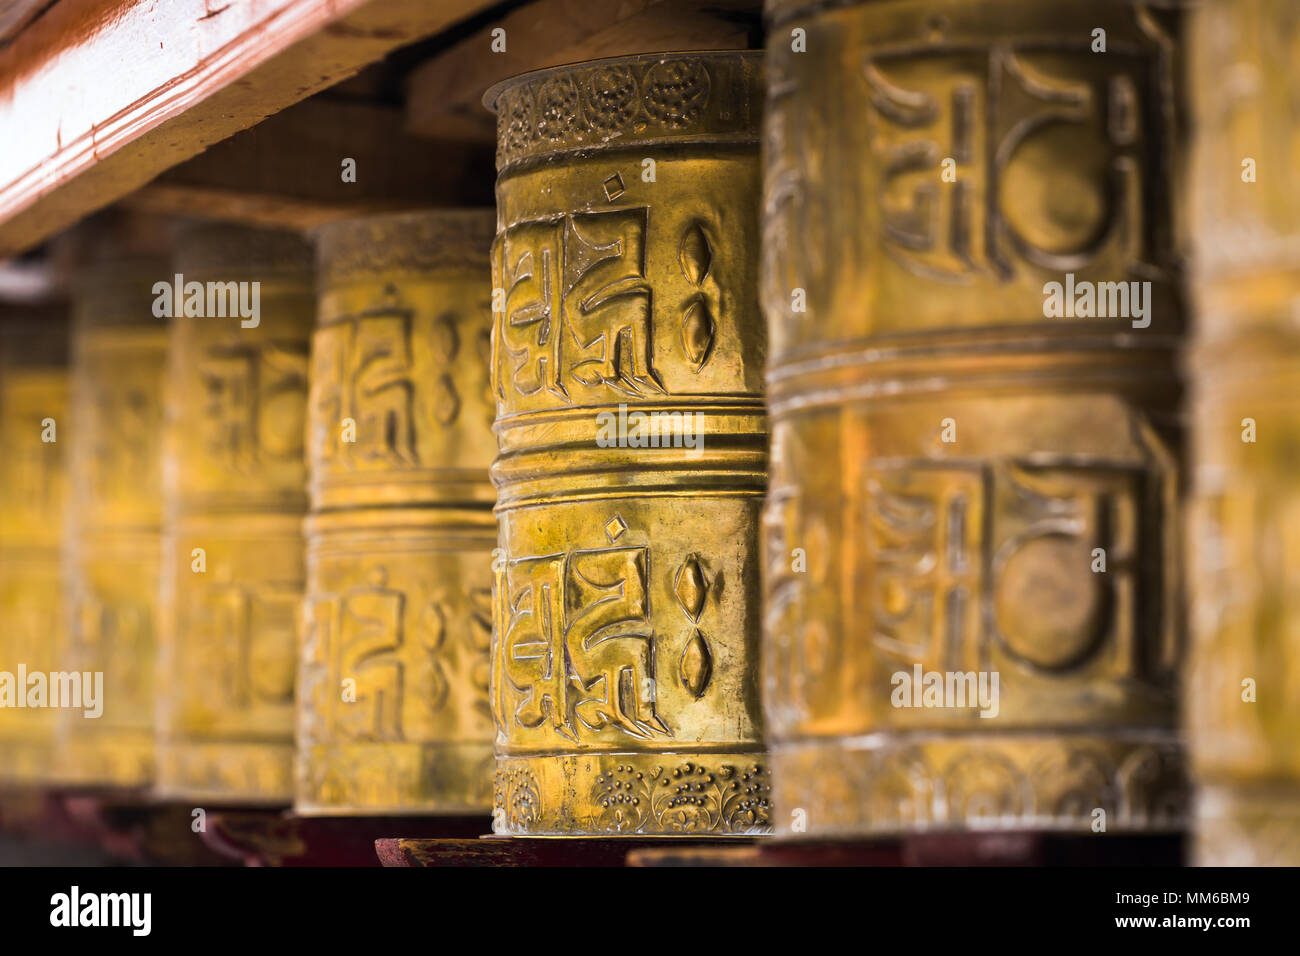 Prière bouddhiste tibétain au Ladakh, Inde les roues. Traditionnellement, le mantra Om Mani Padme Hum est écrit en sanskrit à l'extérieur de la roue Banque D'Images